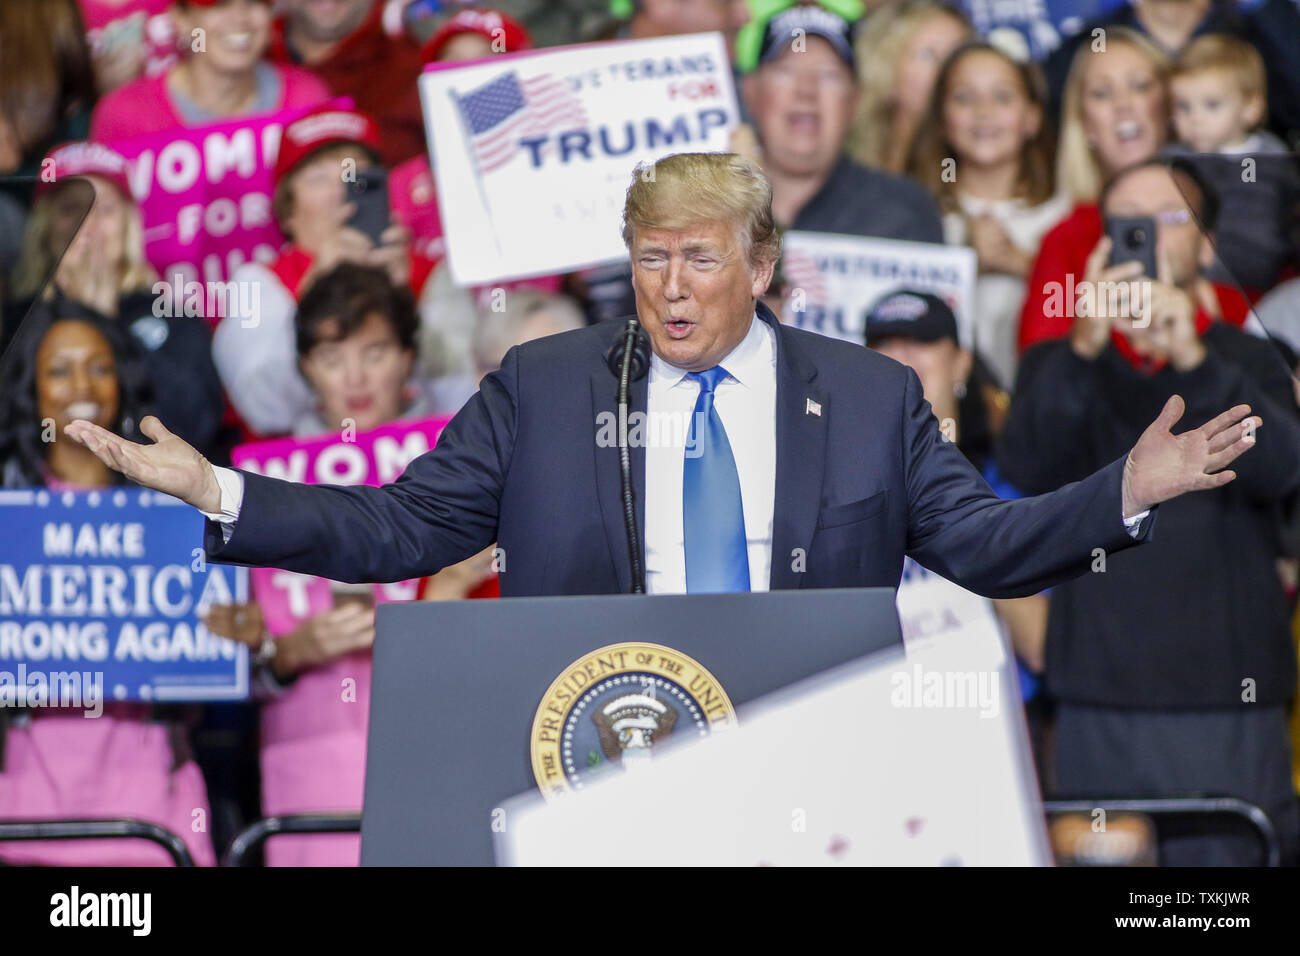 Le président Donald Trump prend la parole à un grand rassemblement de nouveau l'Amérique faire à Charlotte, Caroline du Nord le 26 octobre 2018. Photo par Nell Redmond/UPI. Banque D'Images